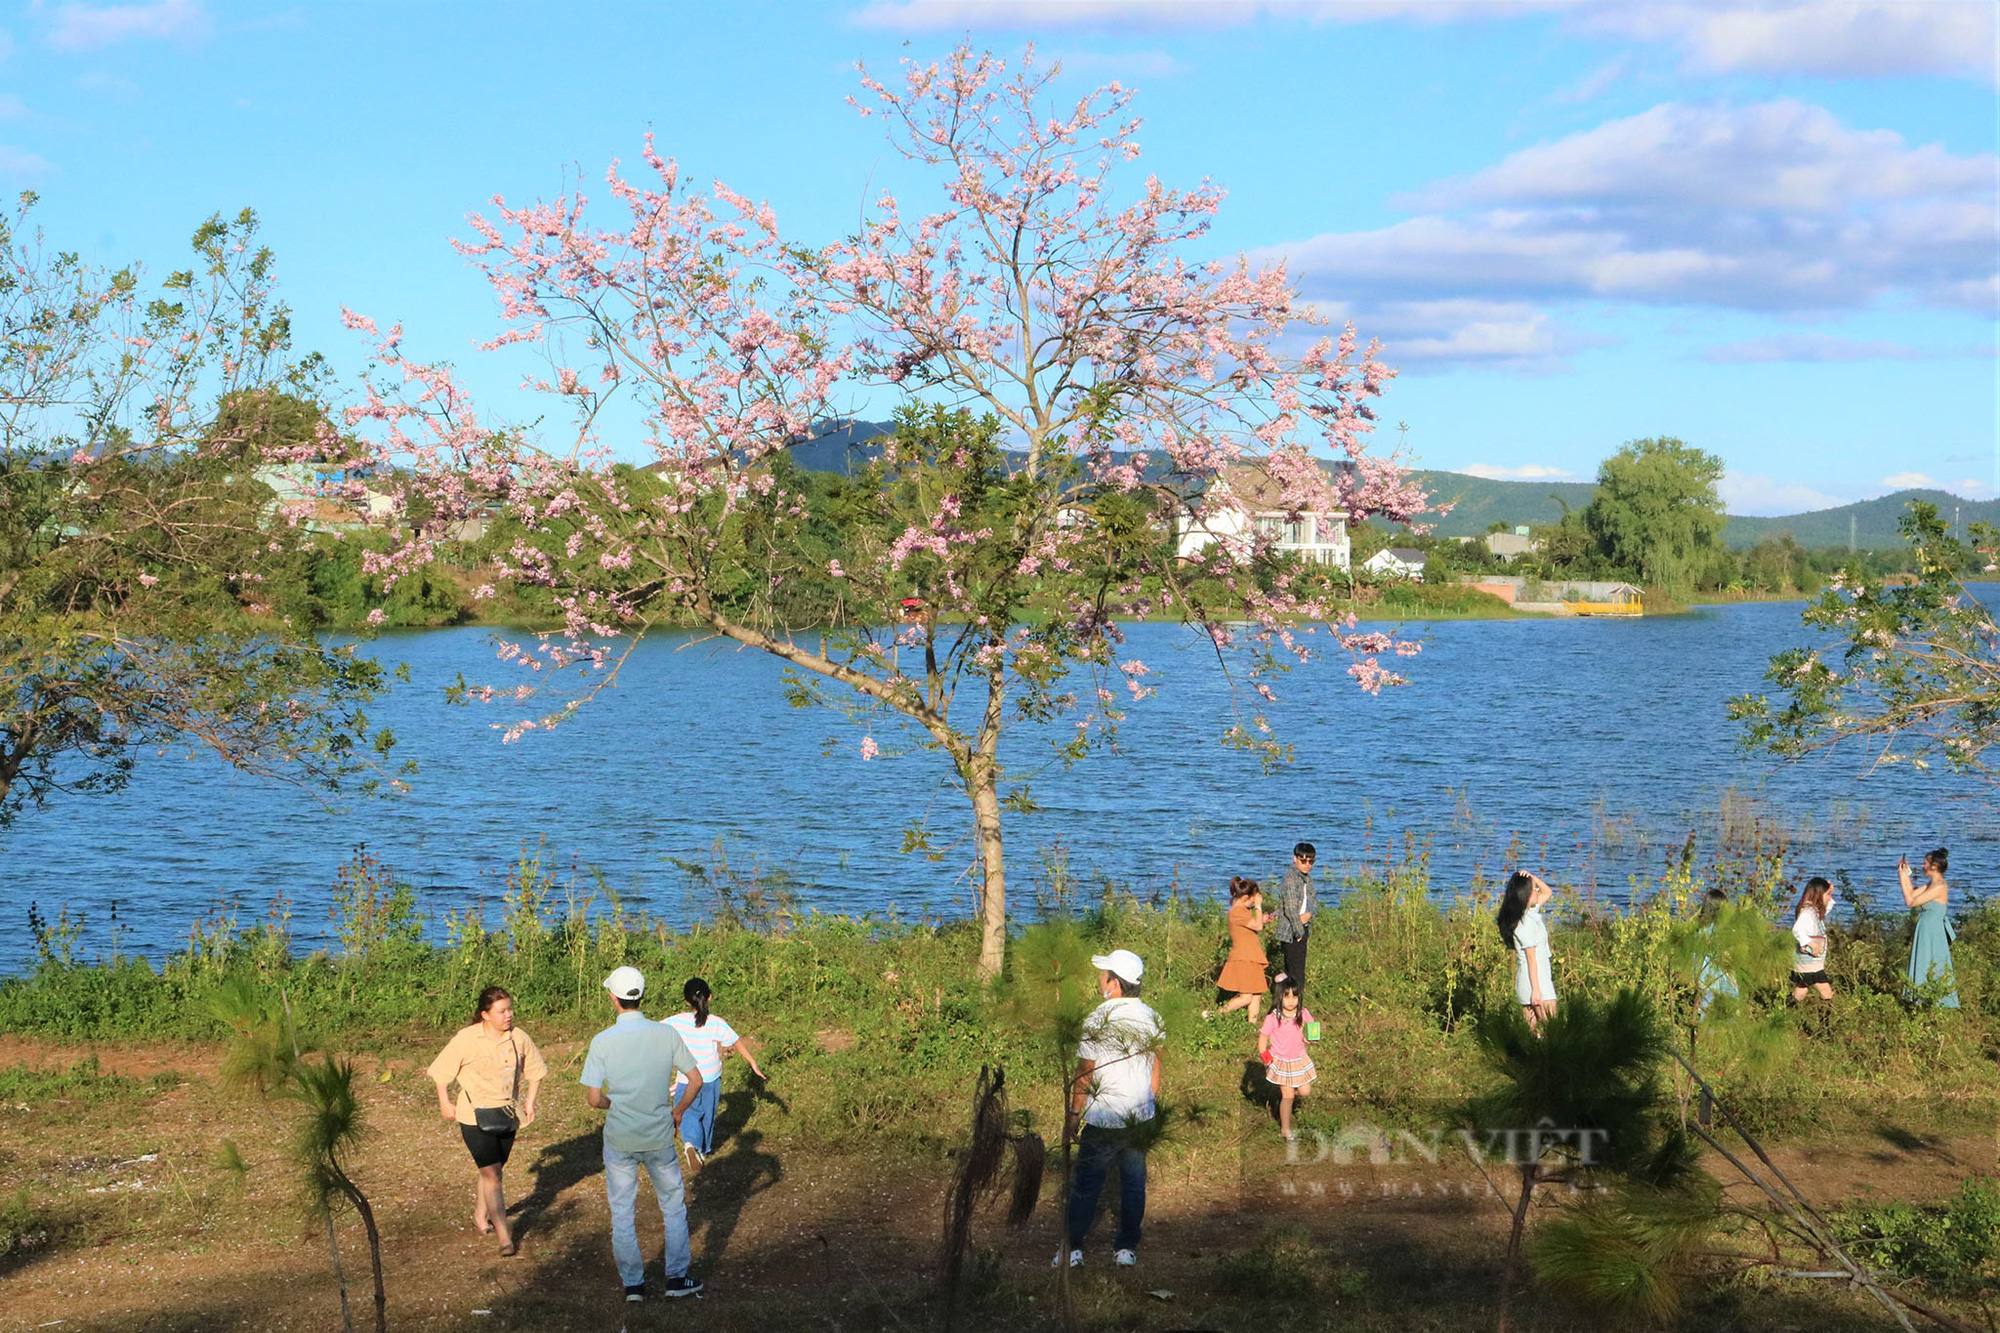 Mê mẩn sắc hồng hoa đỗ mai rực rỡ giữa lòng phố núi, du khách đổ xô check-in, chụp ảnh - Ảnh 6.